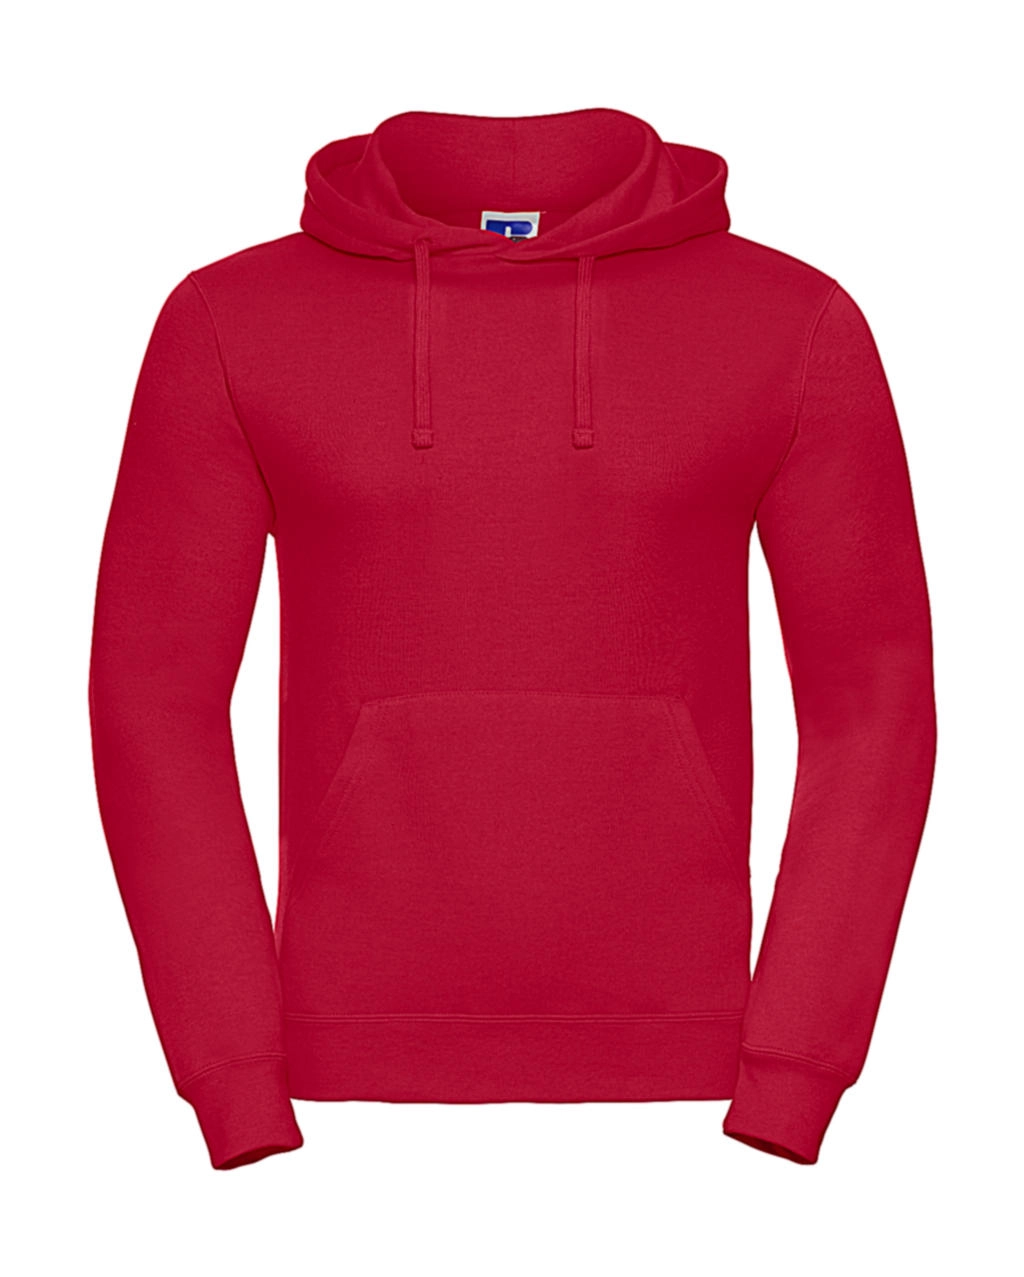 Hooded Sweatshirt zum Besticken und Bedrucken in der Farbe Classic Red mit Ihren Logo, Schriftzug oder Motiv.